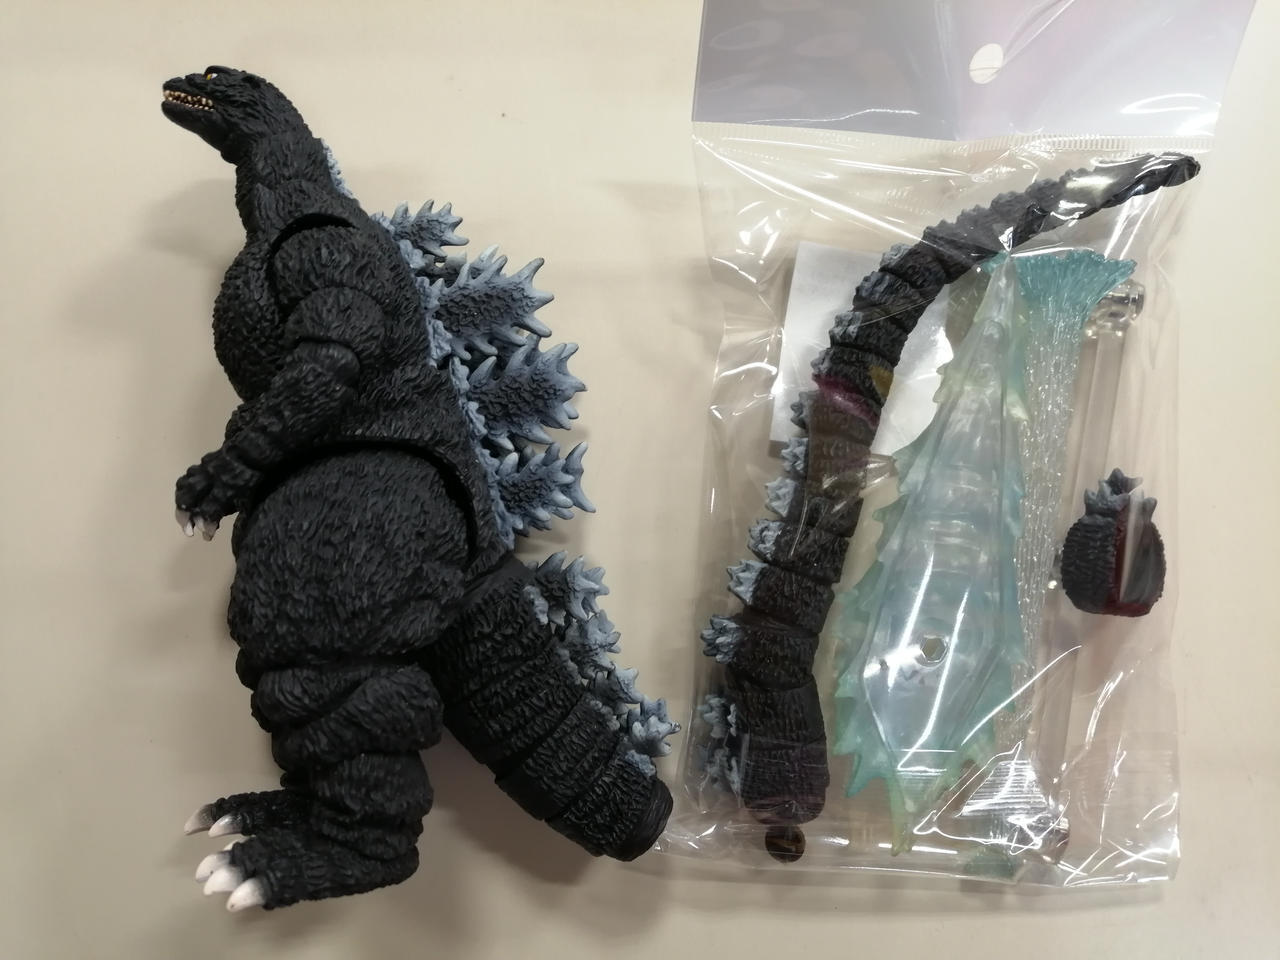 Bandai Godzilla With Heat Ray Effect S.H.Monsterarts FIgure Toy Japan